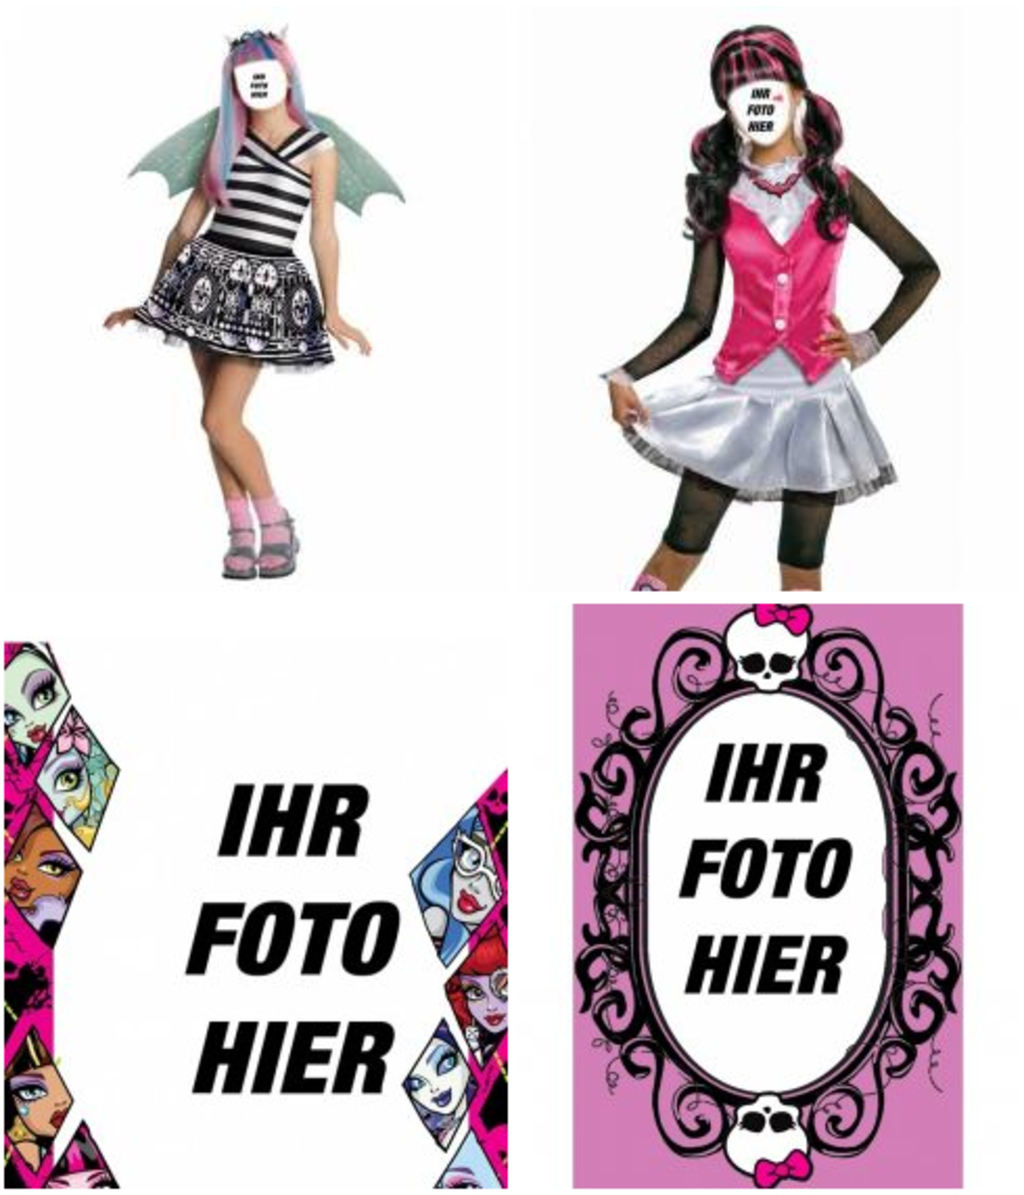 Auswirkungen Monster High zu Ihren Fotos hinzufügen.